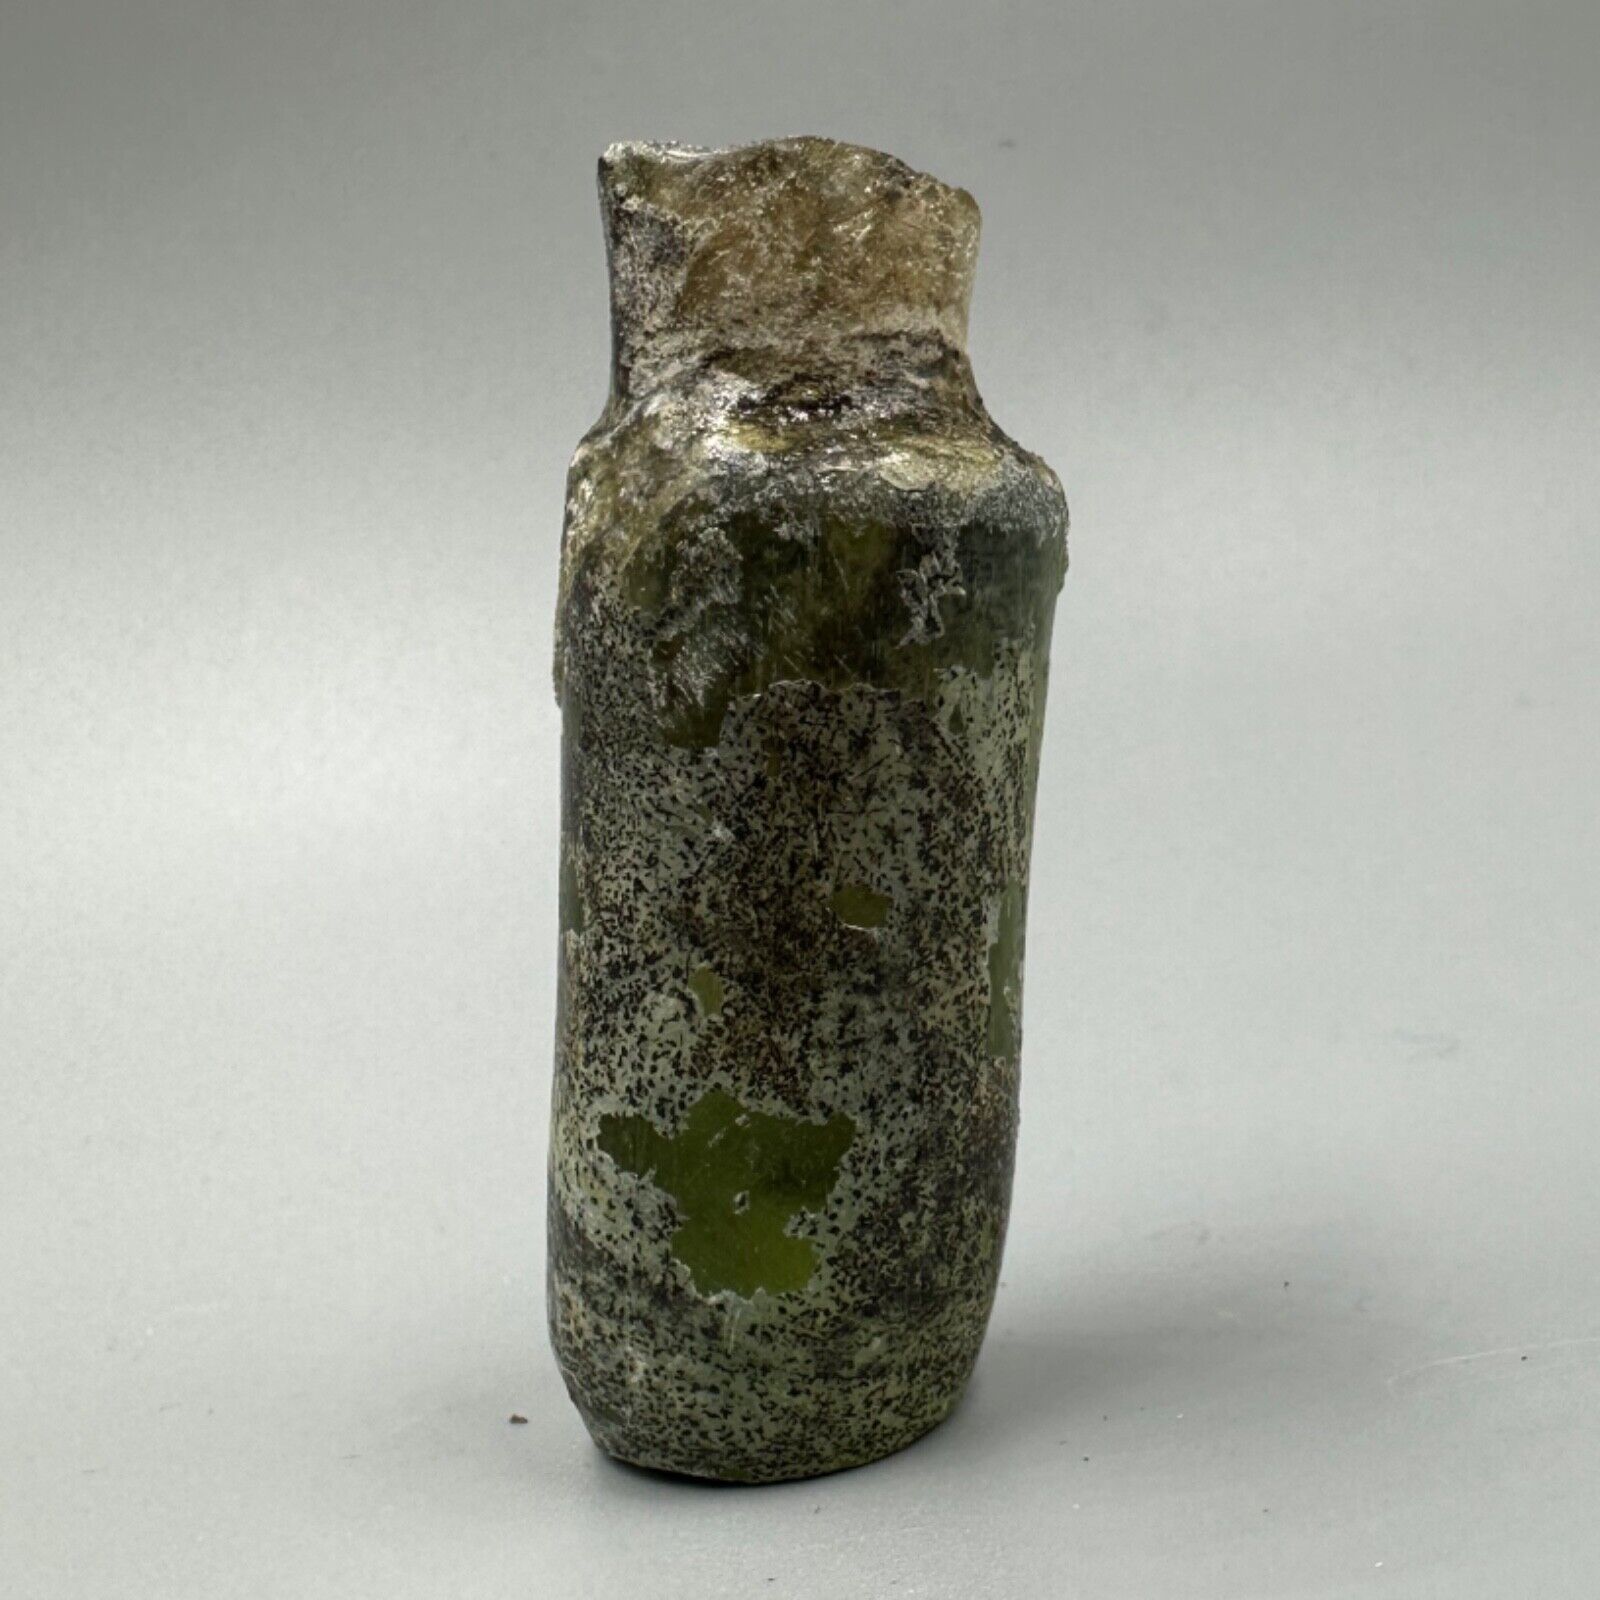 Rare Unique Ancient Roman Glass Authentic Antique Bottle